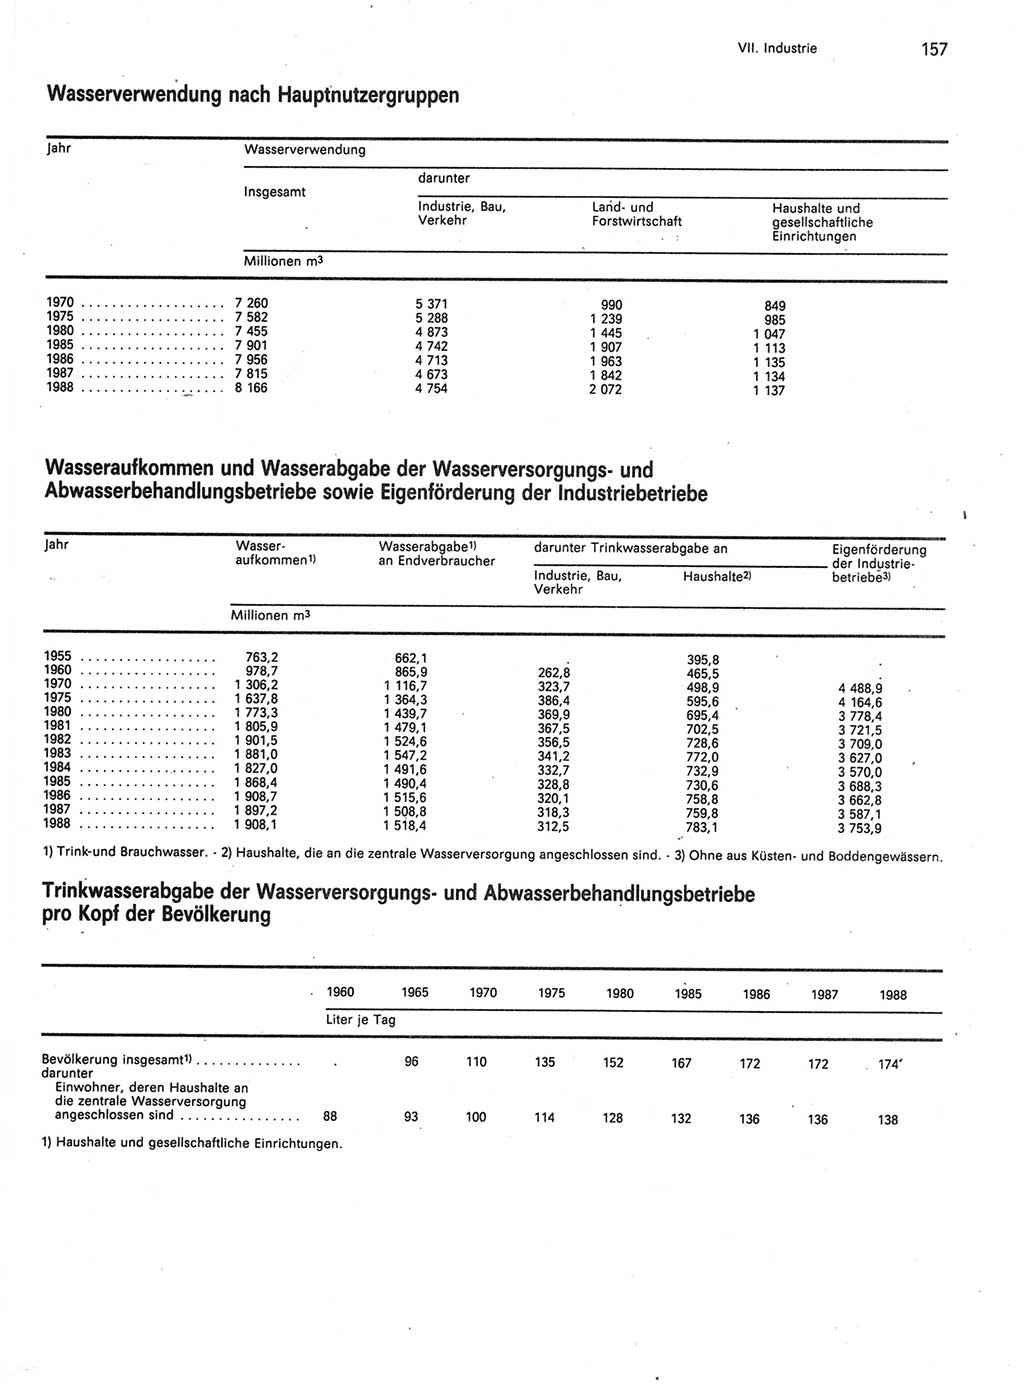 Statistisches Jahrbuch der Deutschen Demokratischen Republik (DDR) 1989, Seite 157 (Stat. Jb. DDR 1989, S. 157)